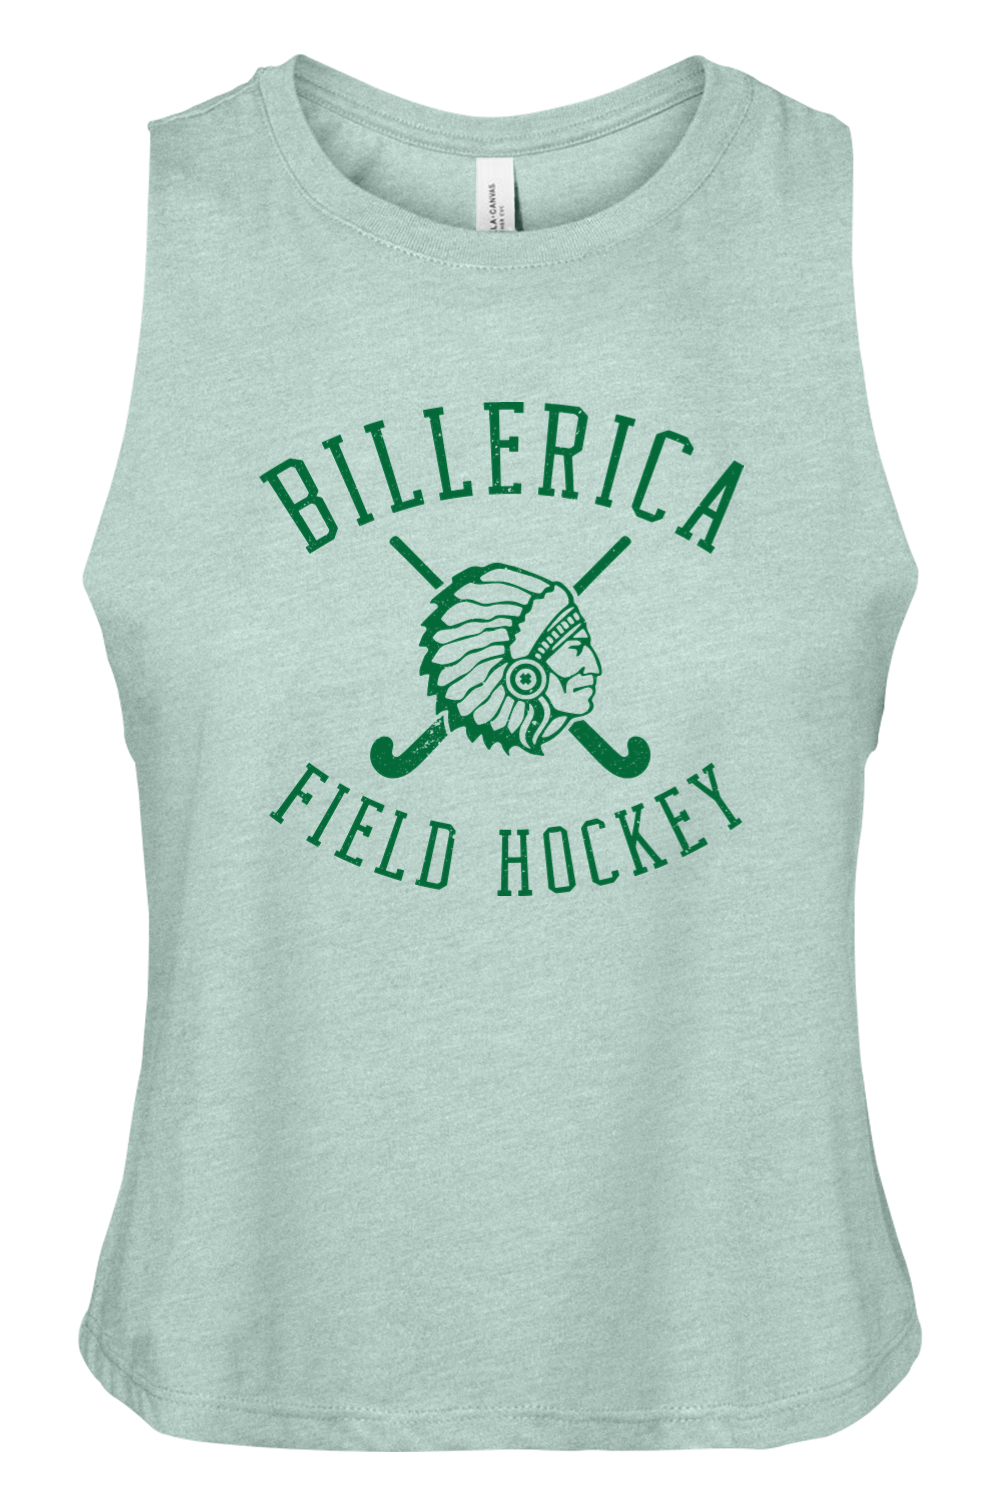 Billerica Field Hockey Women's Racerback Cropped Tank